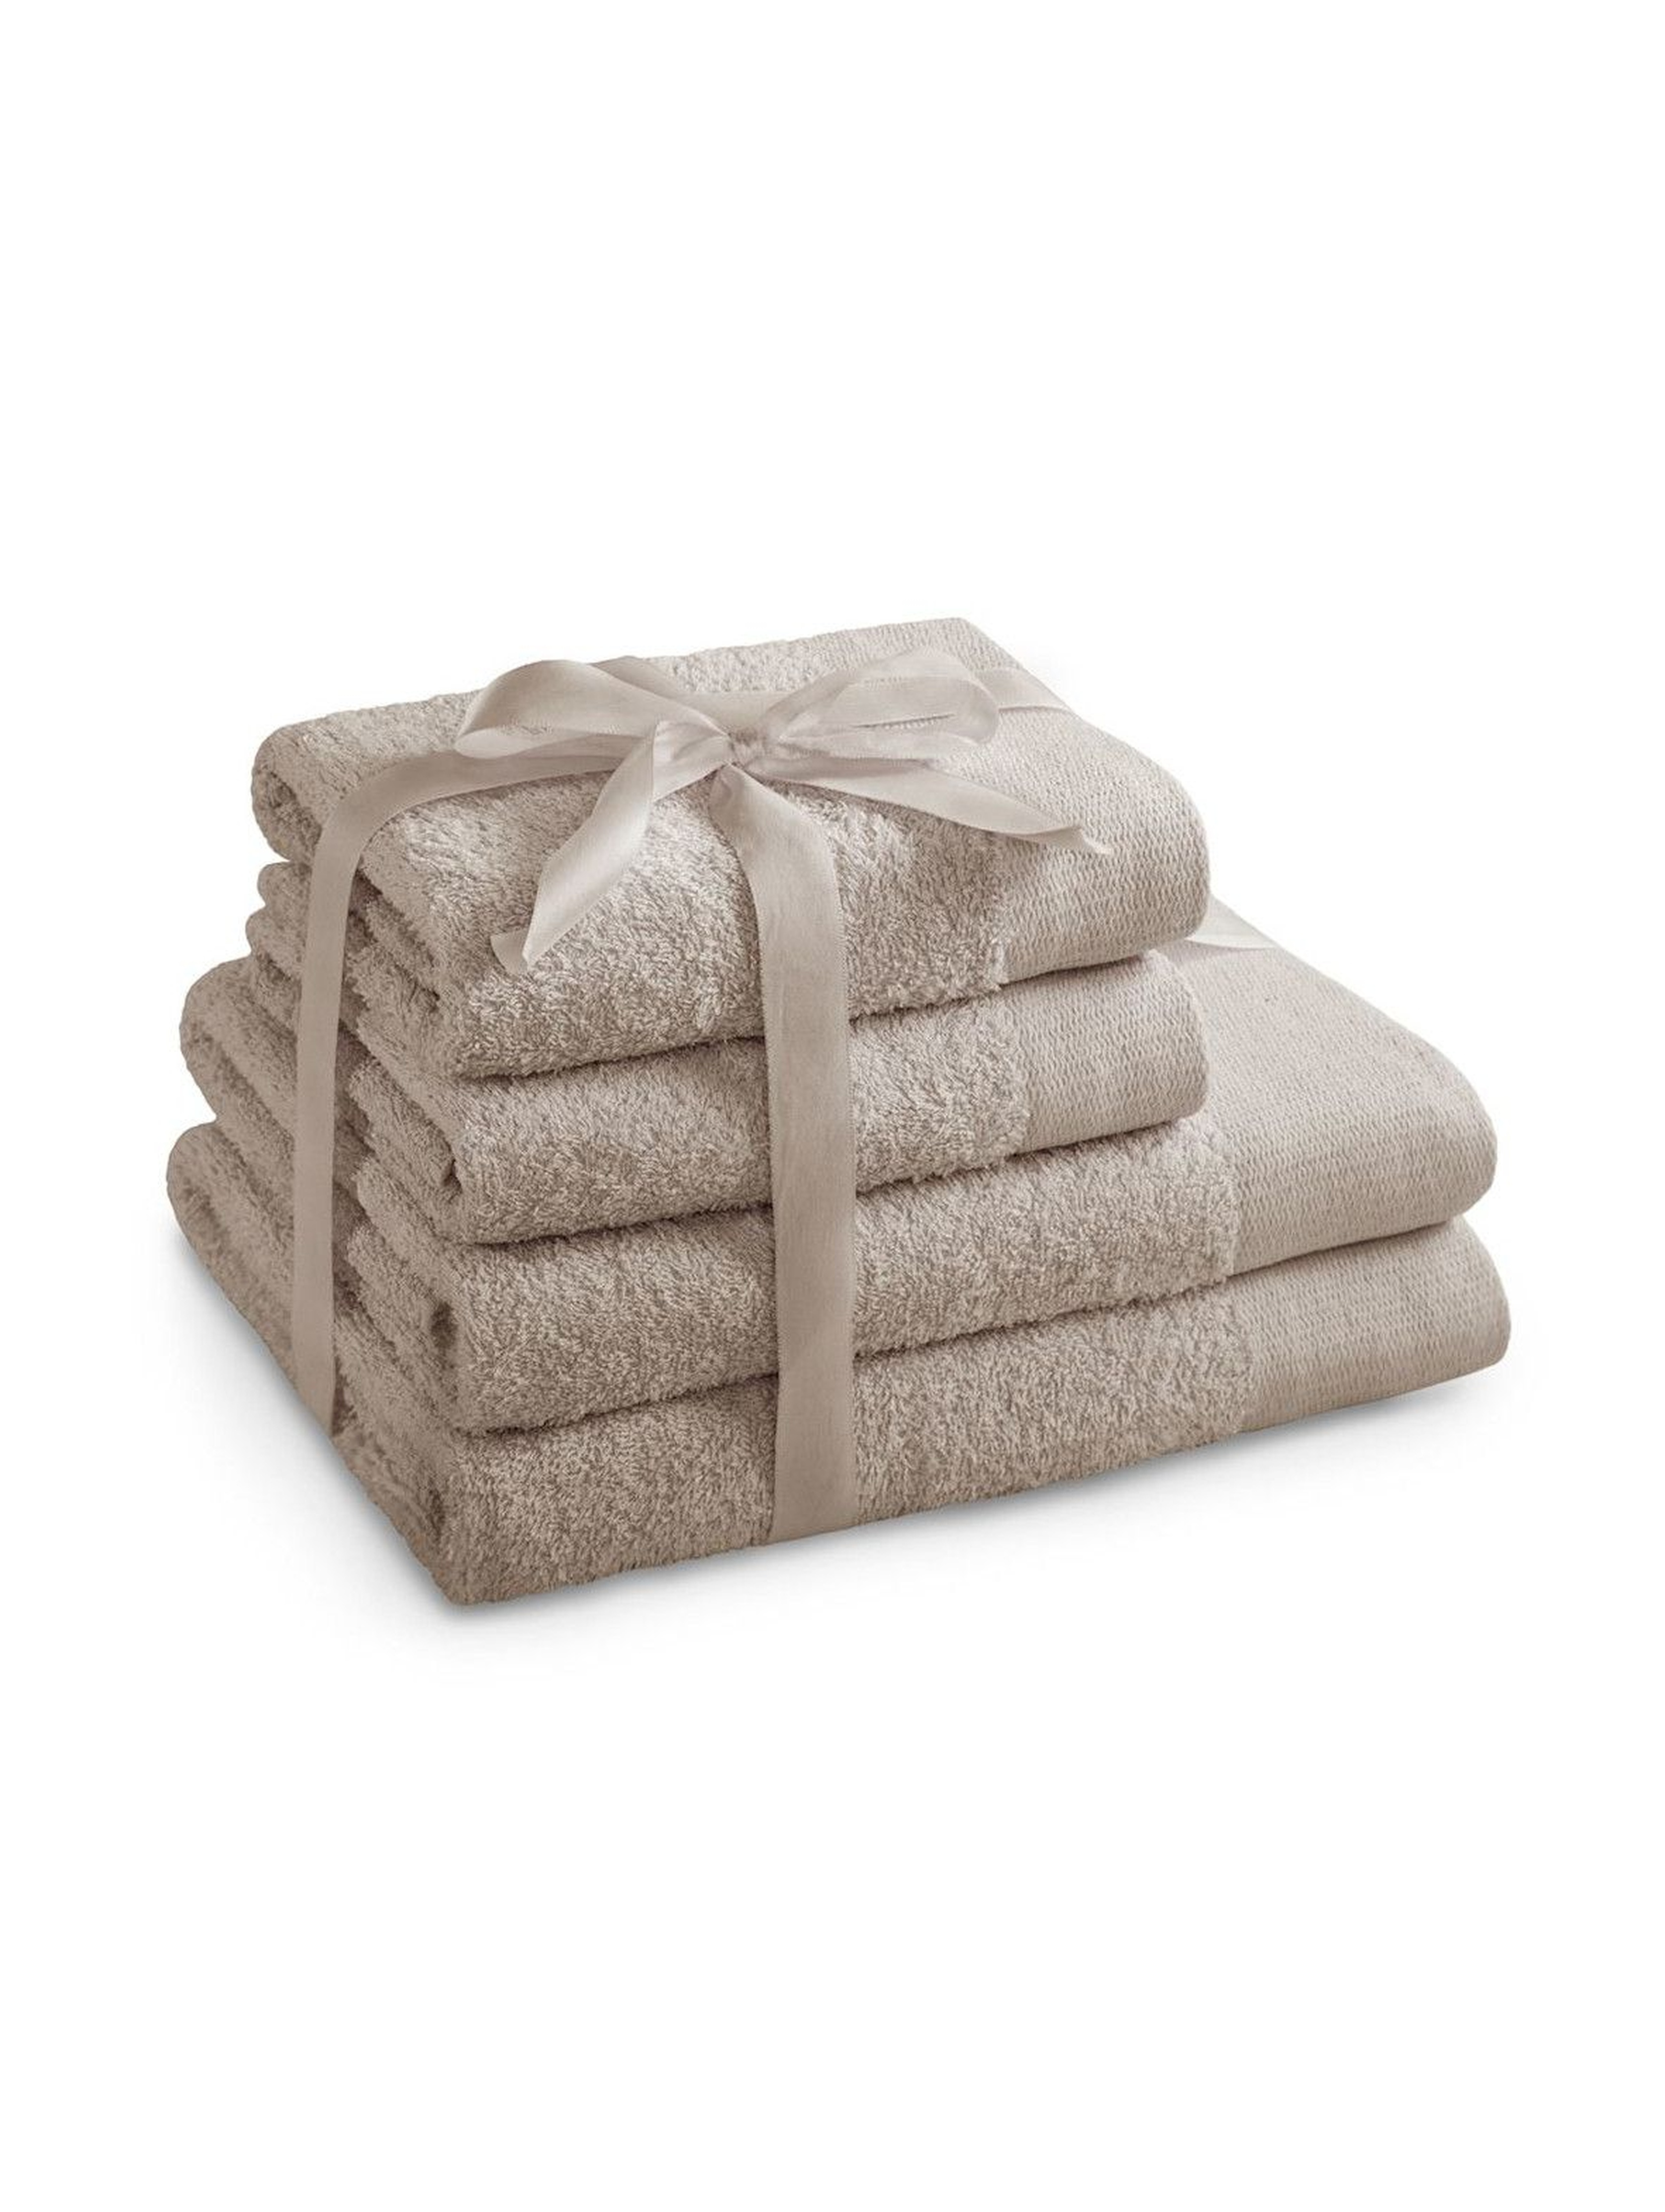 Zestaw ręczników AMARI beżowe - 4 sztuki - 2 ręczniki 70x140 cm, 2 ręczniki 50x100 cm